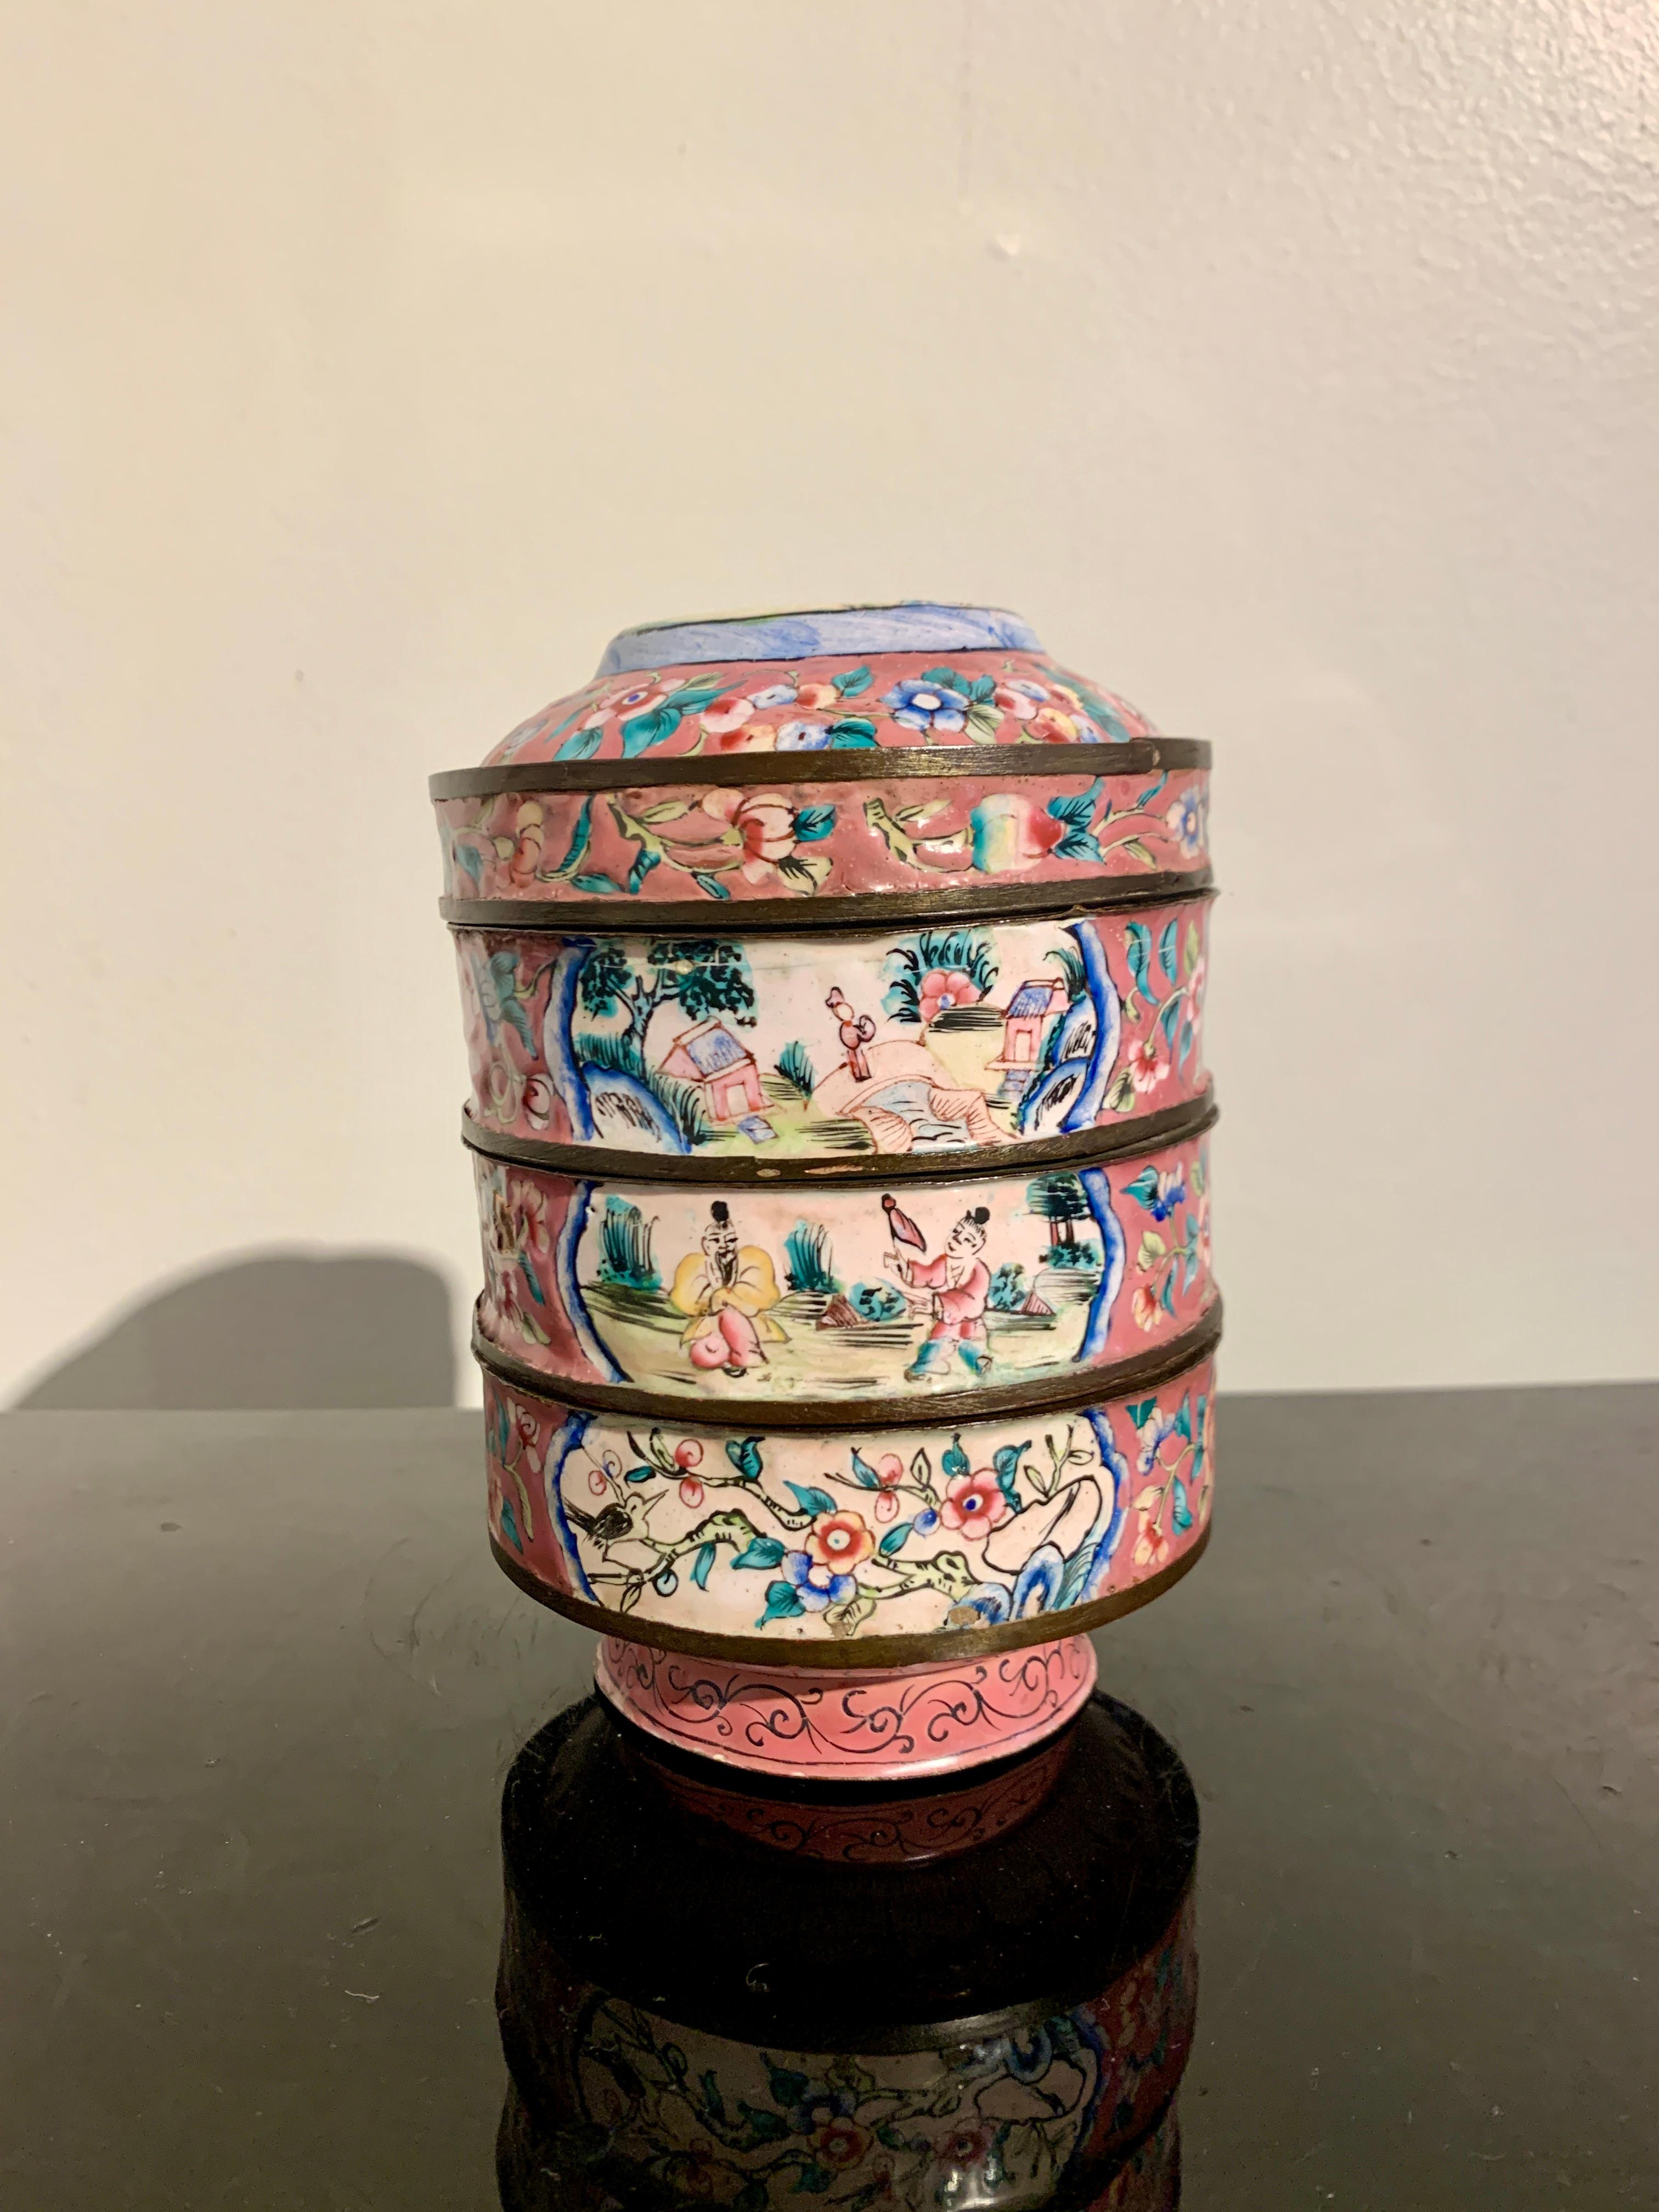 Une très belle boîte ronde à empiler en émail rose de Canton et son couvercle, datant de la fin de la dynastie Qing, vers 1900, Chine.

La boîte circulaire empilable se compose d'une base en forme de bol, de deux plateaux ronds empilables et d'un